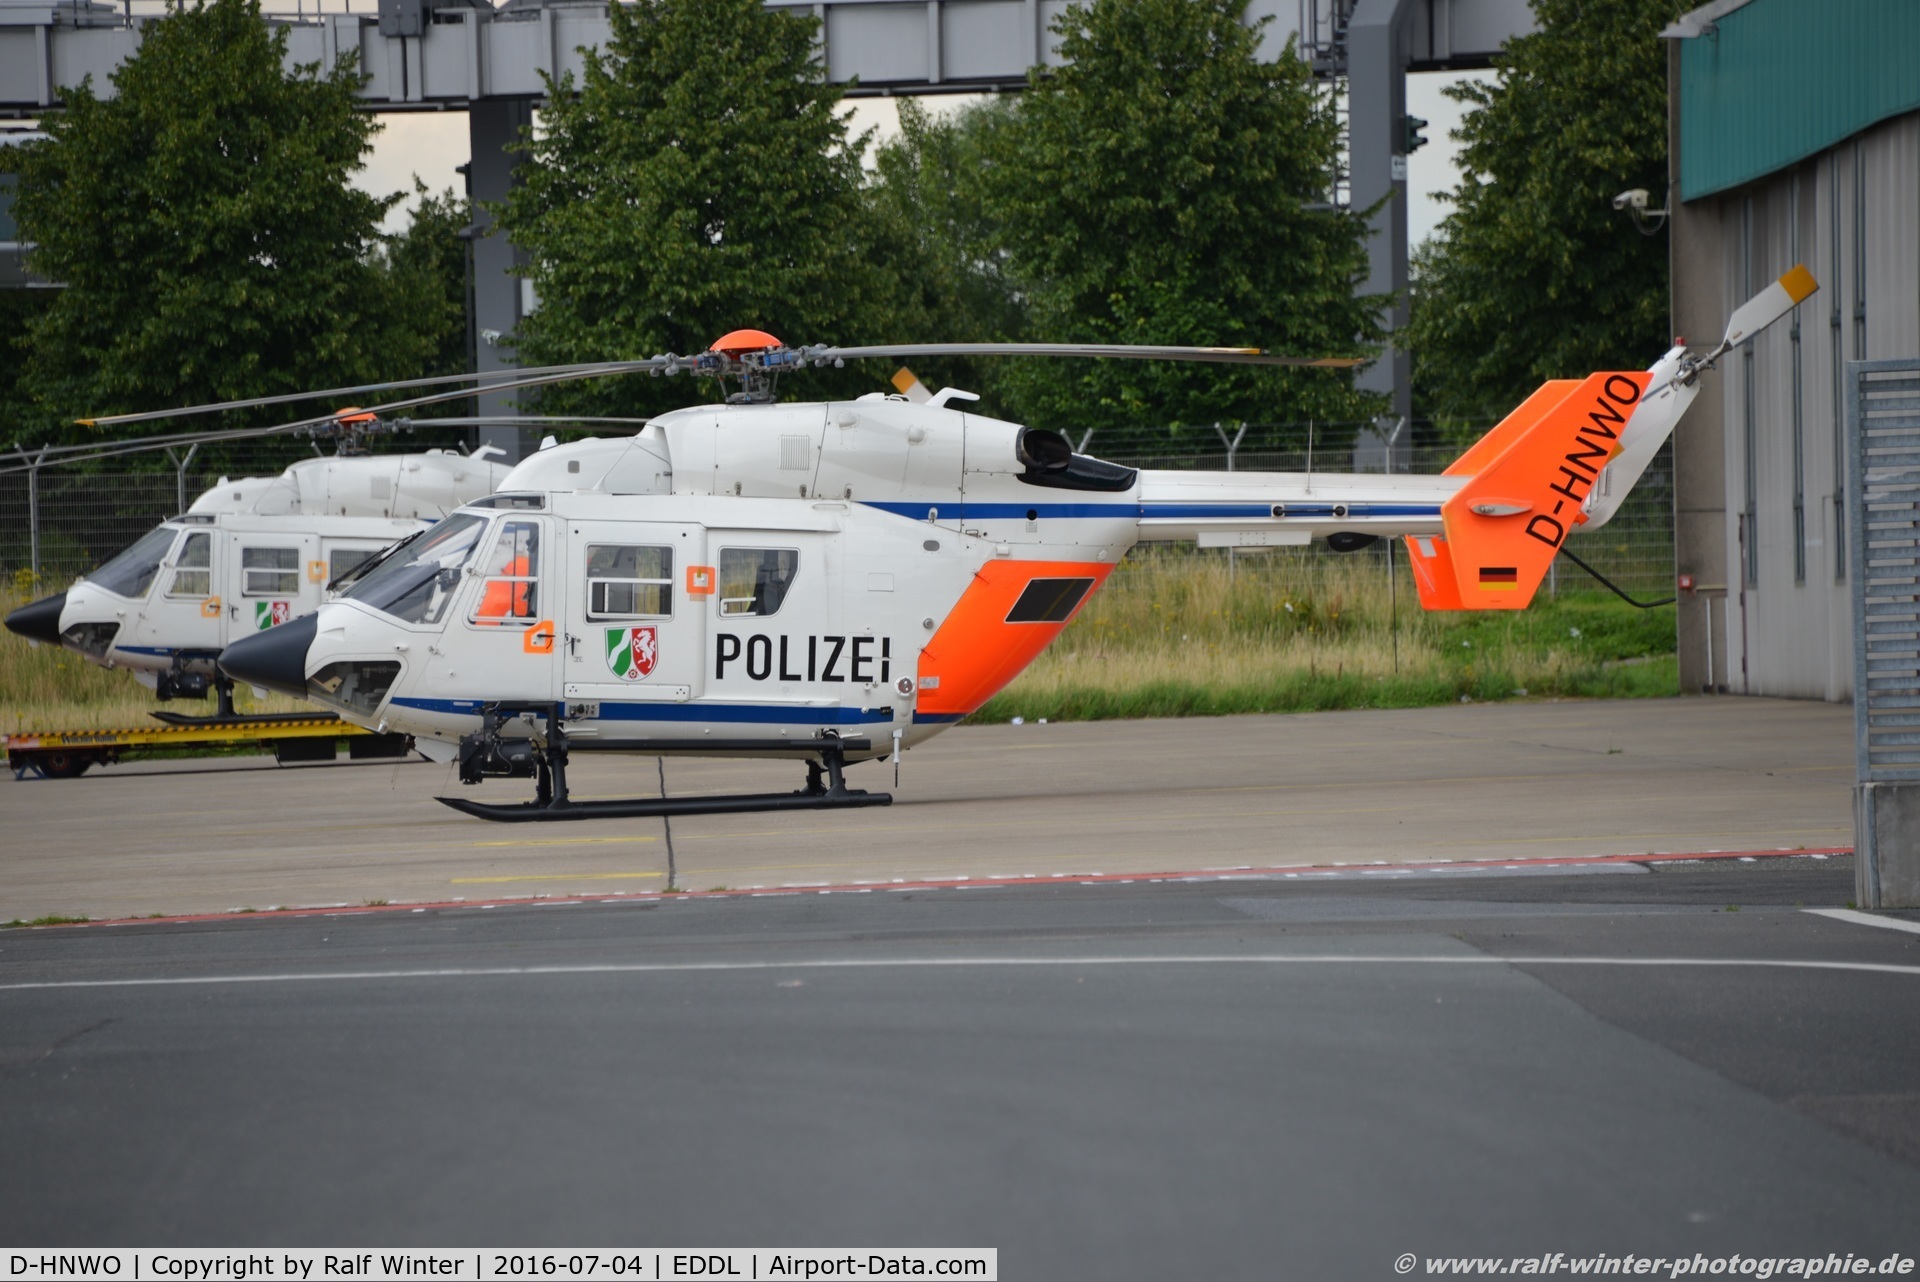 D-HNWO, 2004 Eurocopter-Kawasaki BK-117C-1 C/N 7552, Eurocopter BK-117C1 - NRW Polizei NRW - 7552 - D-HNWO - 04.07.2016 - EDDL